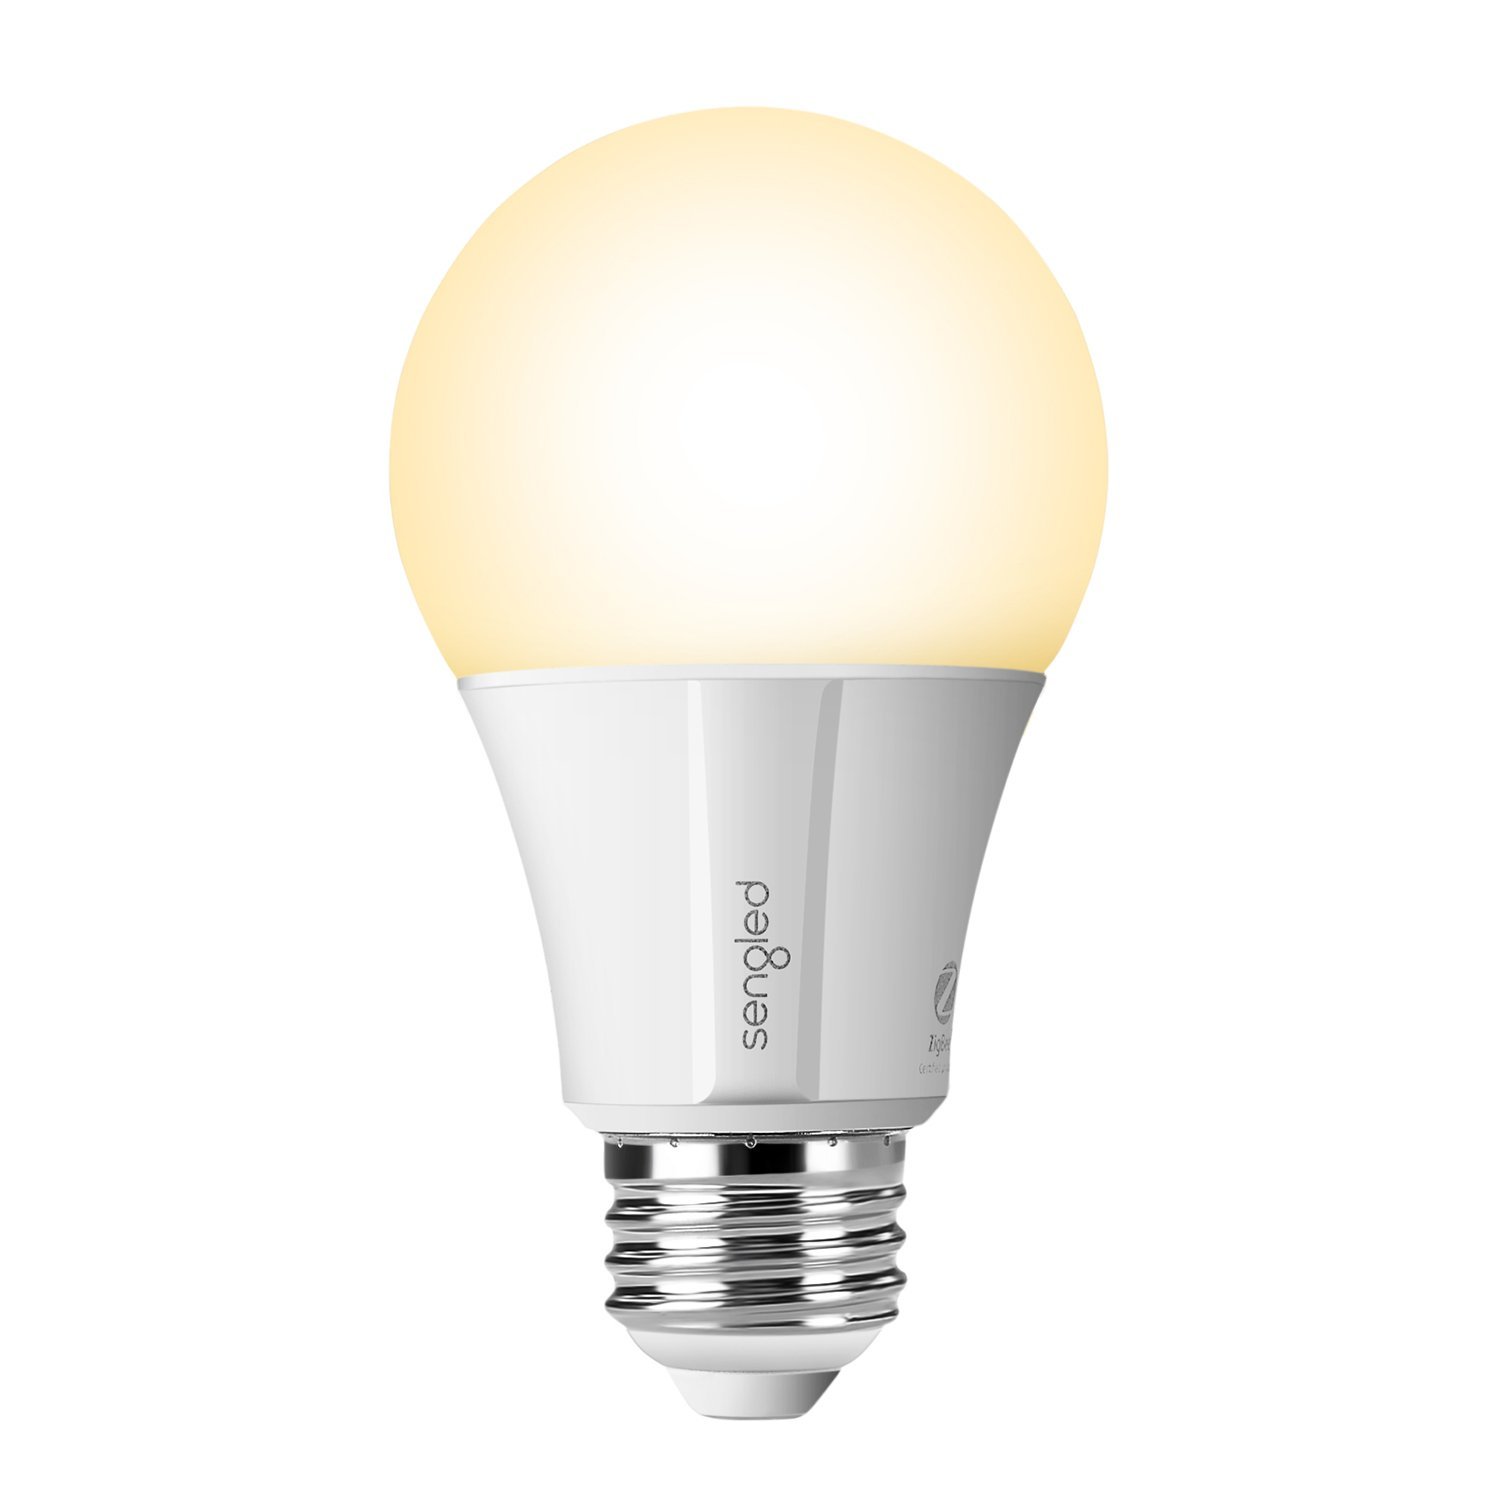 Sengled Element Classic A19 LED smart light bulb for $7